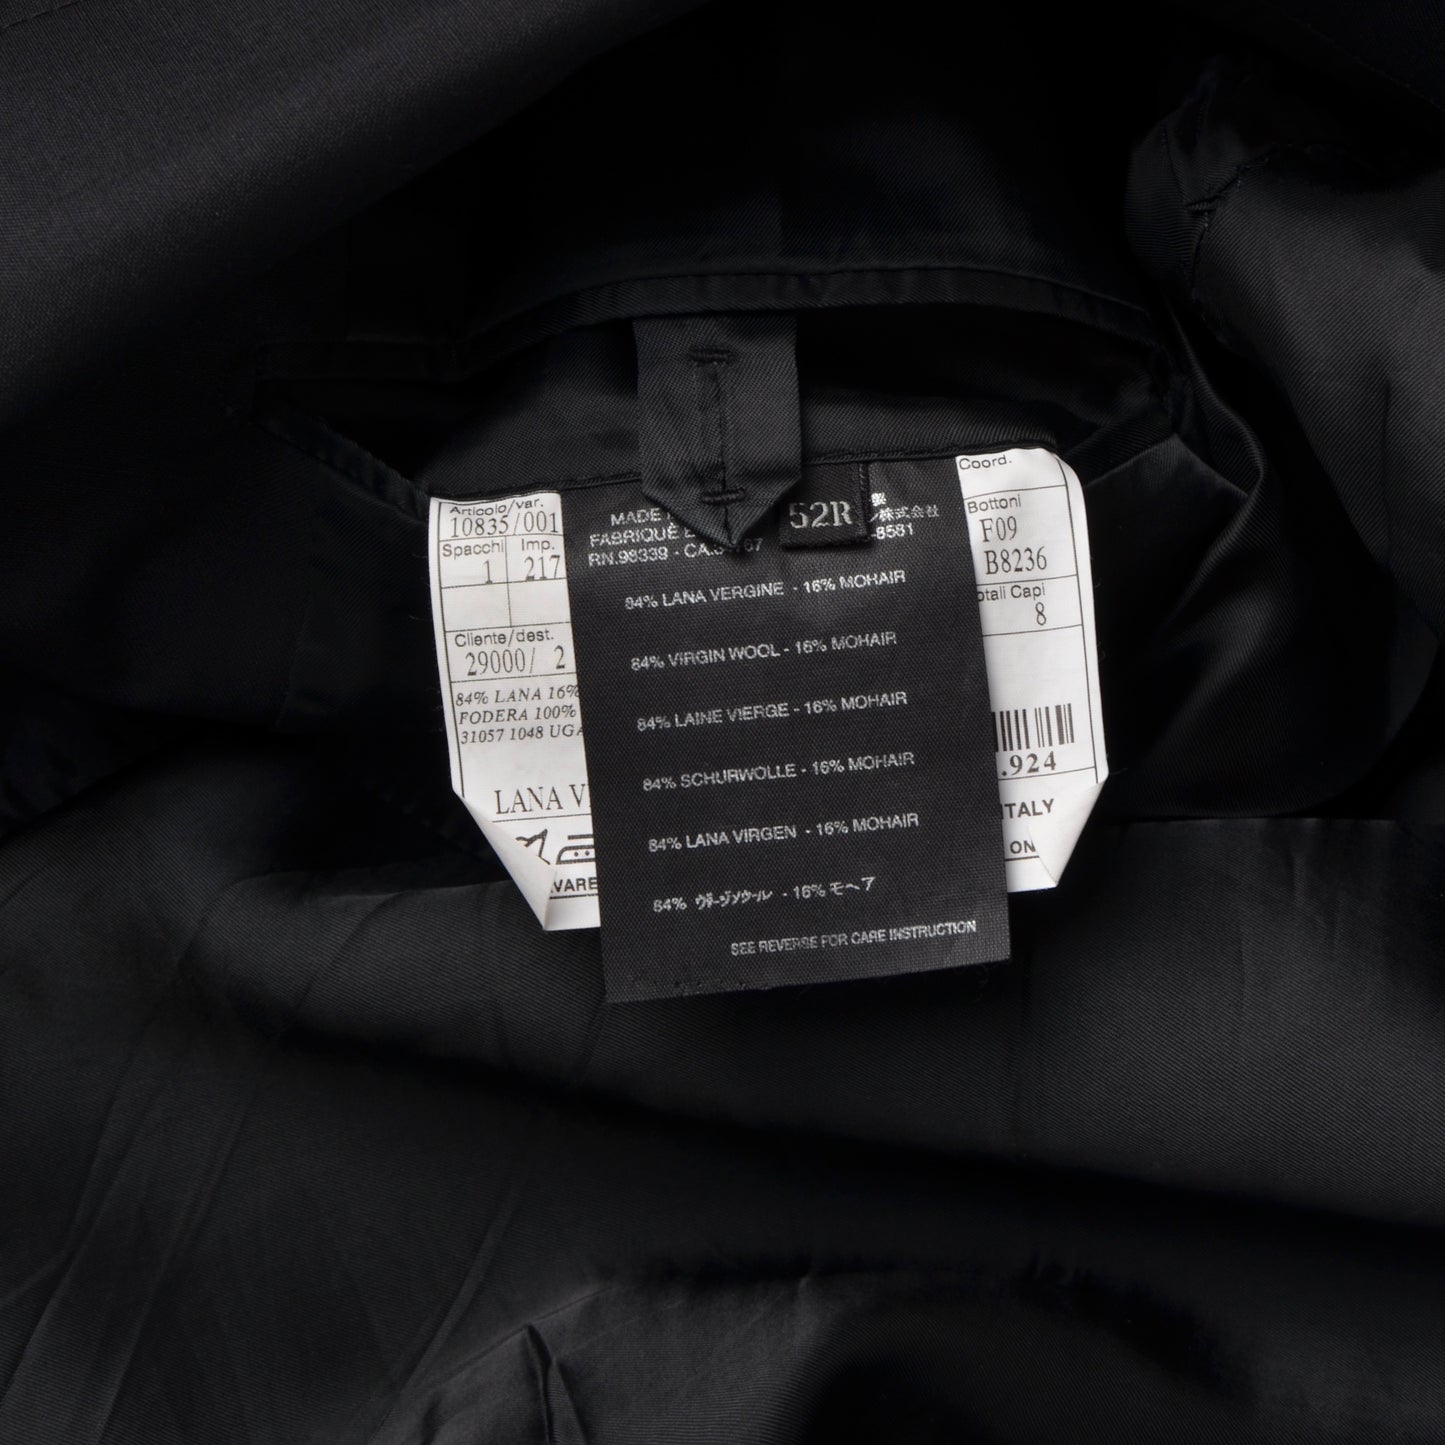 Prada Milano Wool Mohair Jacket Size 52 - Black